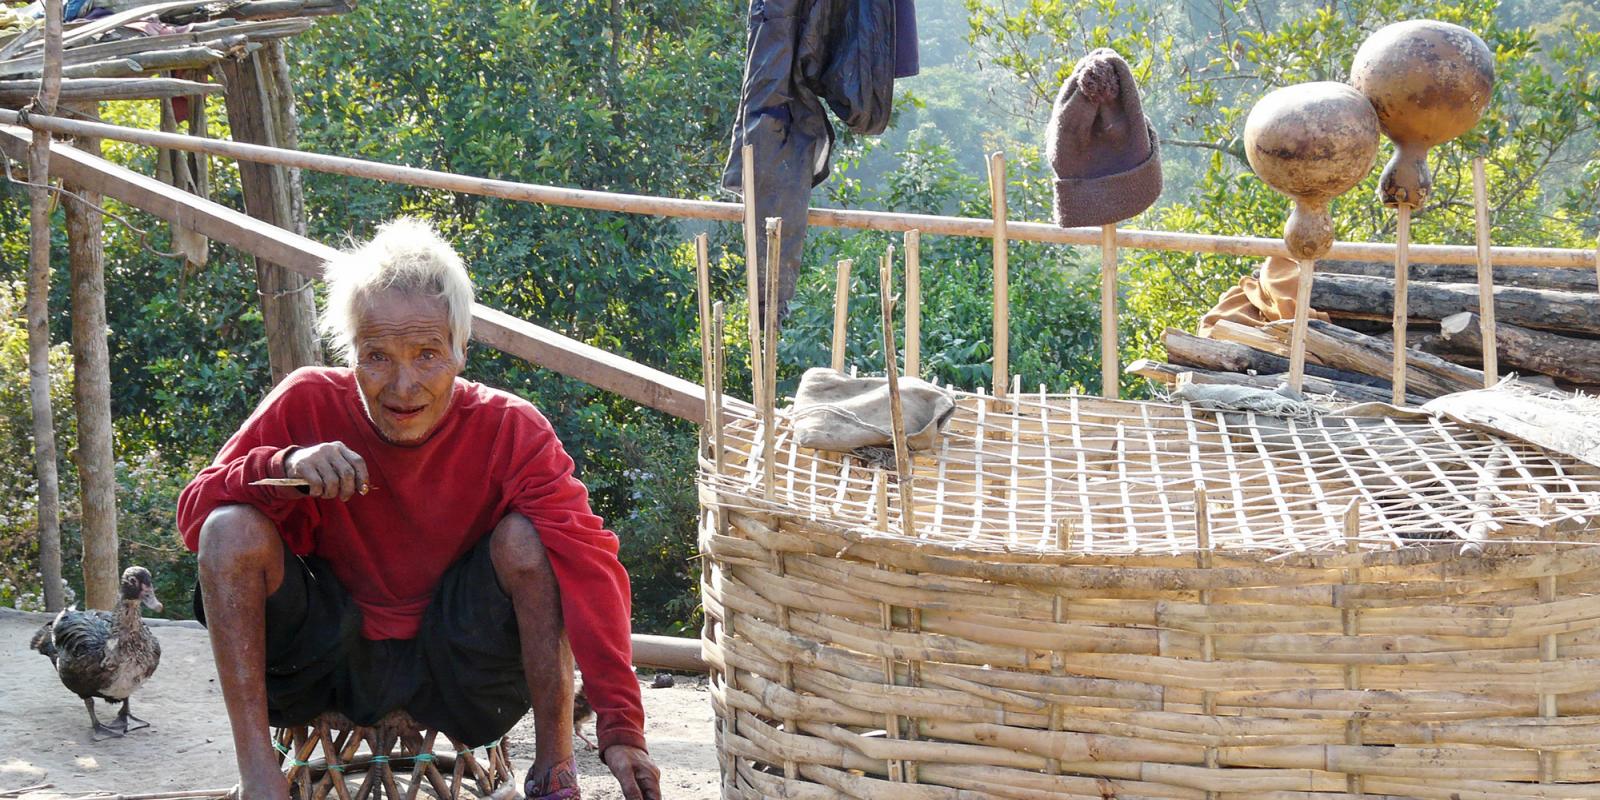 Reisverhaal en tips over Luang Namtha: een trekking in het noorden van Laos | Online reismagazine My World is Yours